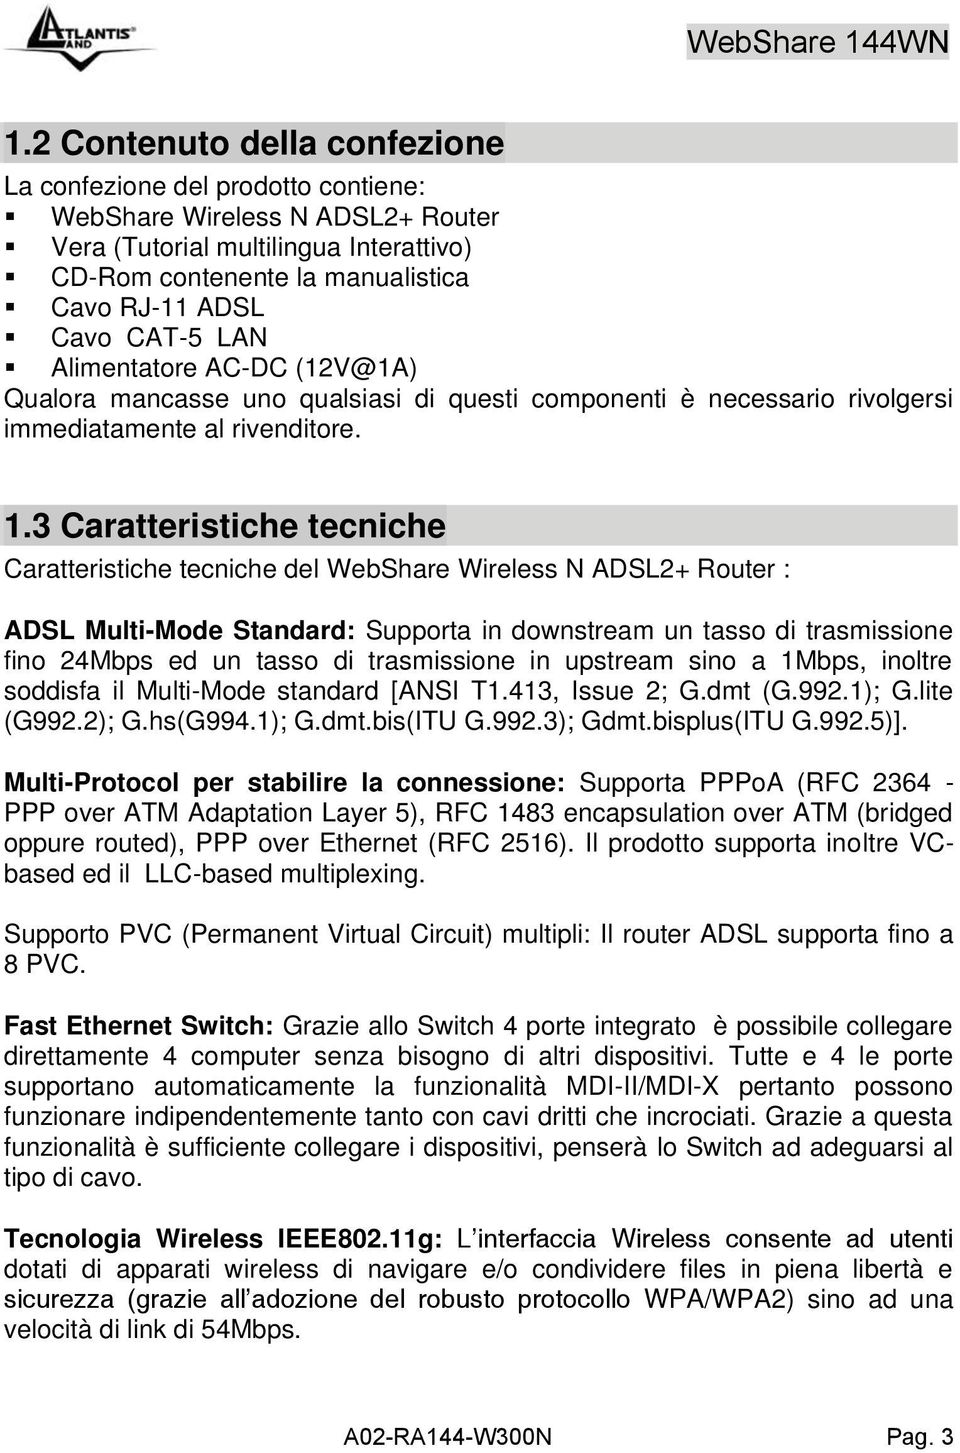 3 Caratteristiche tecniche Caratteristiche tecniche del WebShare Wireless N ADSL2+ Router : ADSL Multi-Mode Standard: Supporta in downstream un tasso di trasmissione fino 24Mbps ed un tasso di